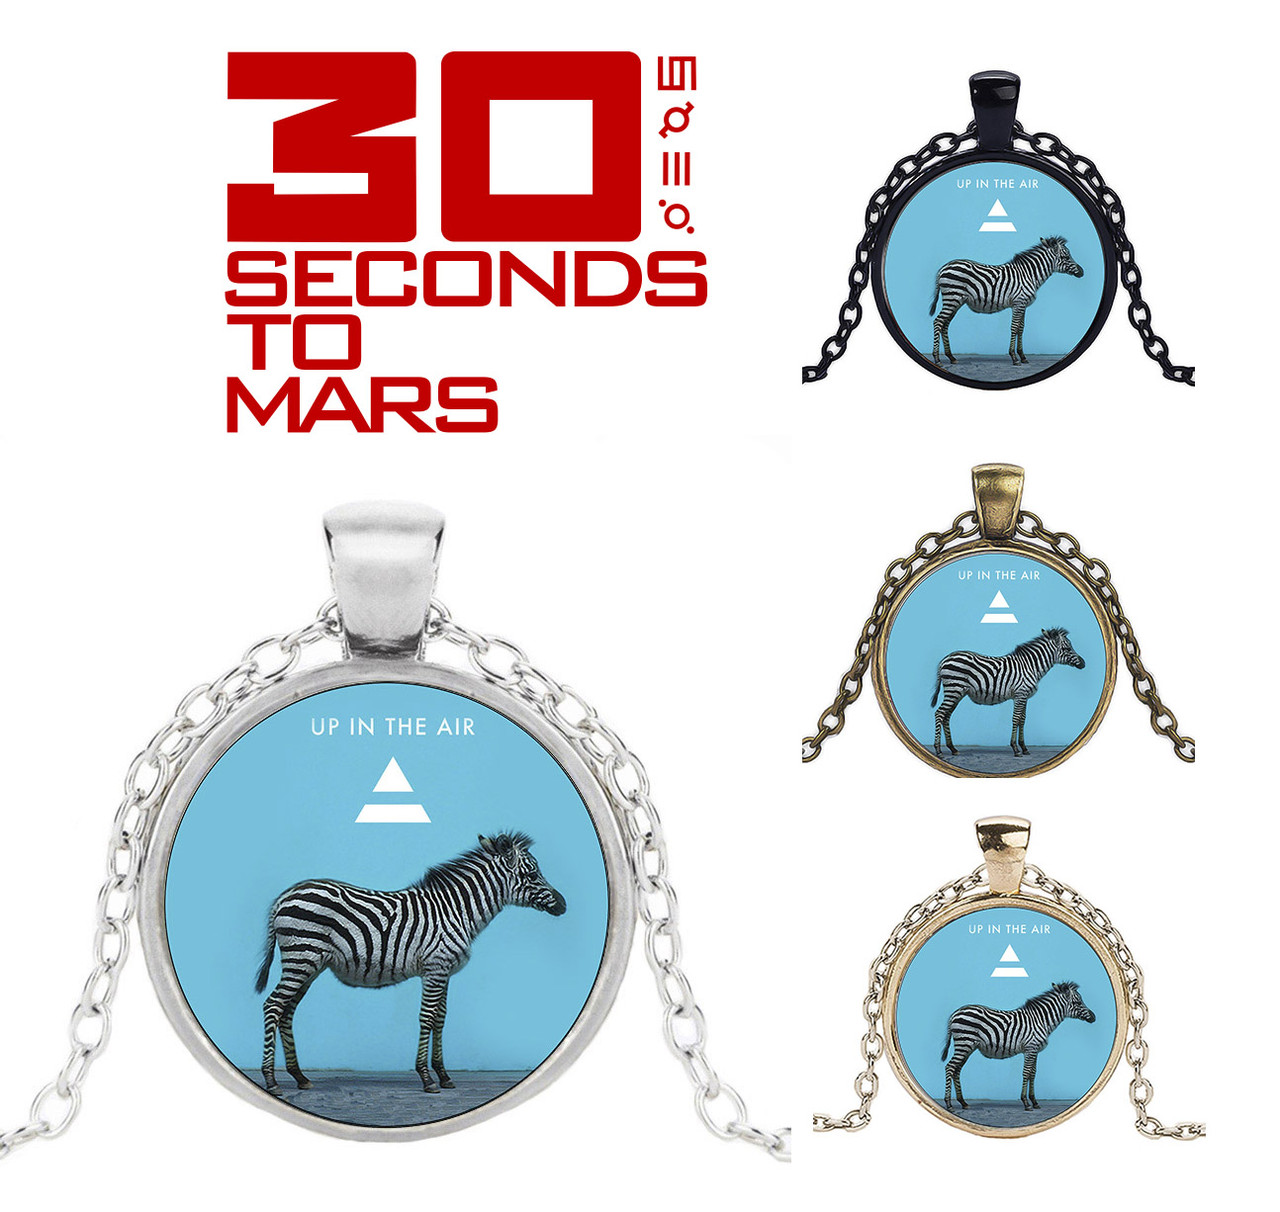 Кулон 30 seconds to Mars з зеброю і логотипом групи Up in the air